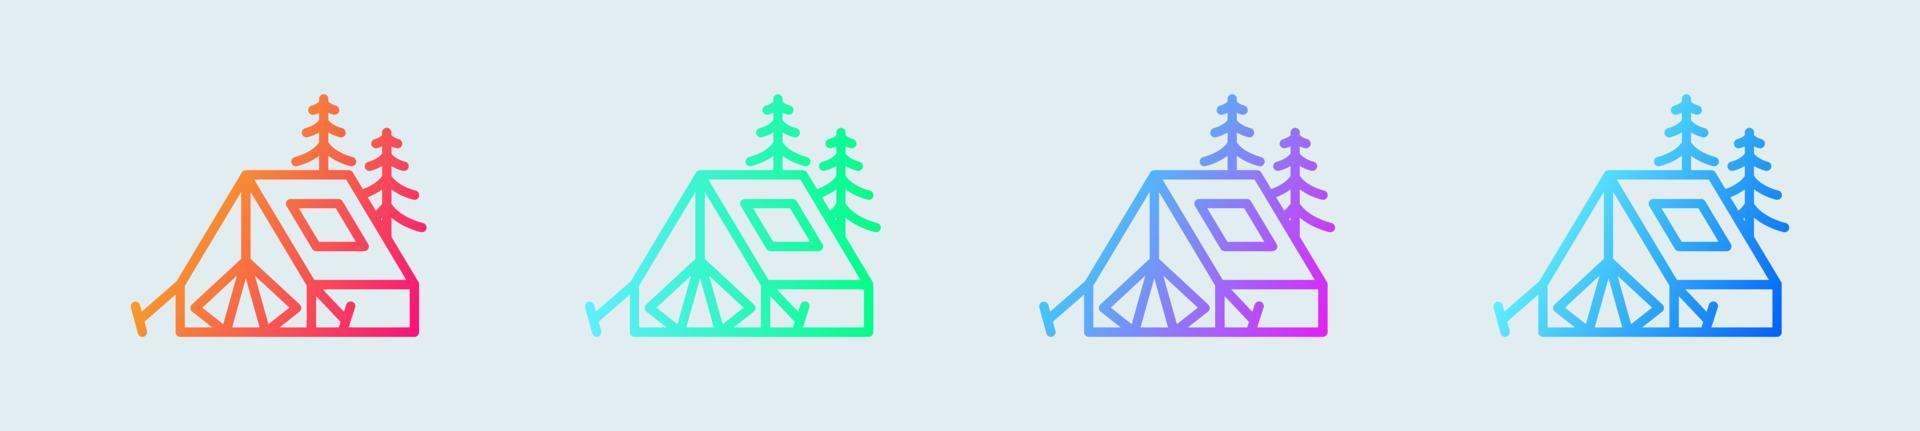 tält linje ikon i lutning färger. camping tecken vektor illustration.